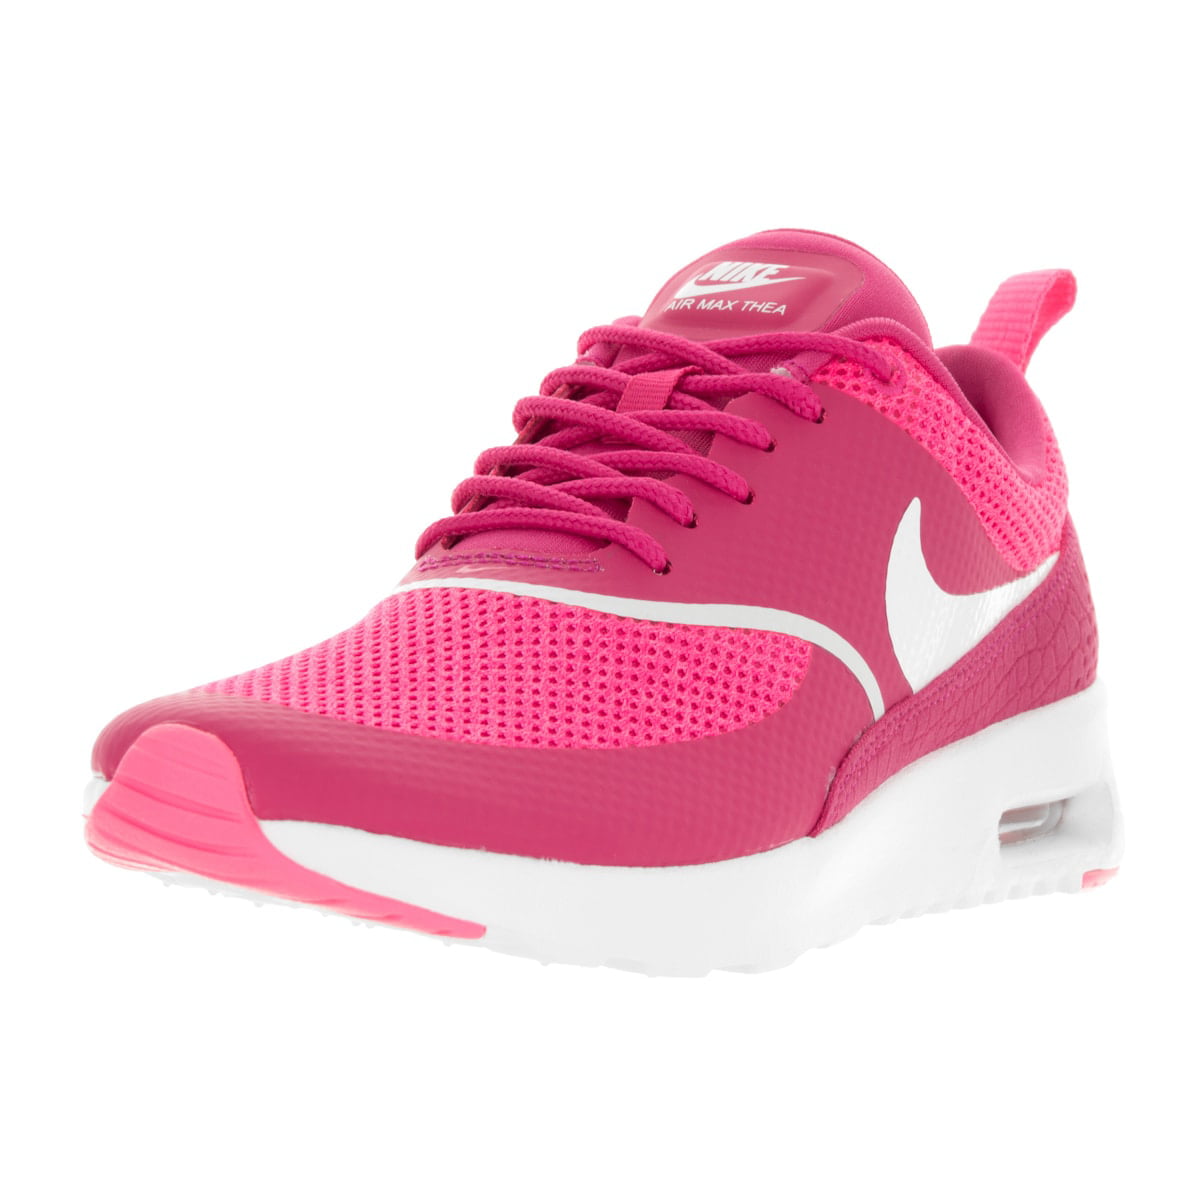 vloek stad Terug kijken Nike Women's Air Max Thea Running Shoe - Walmart.com